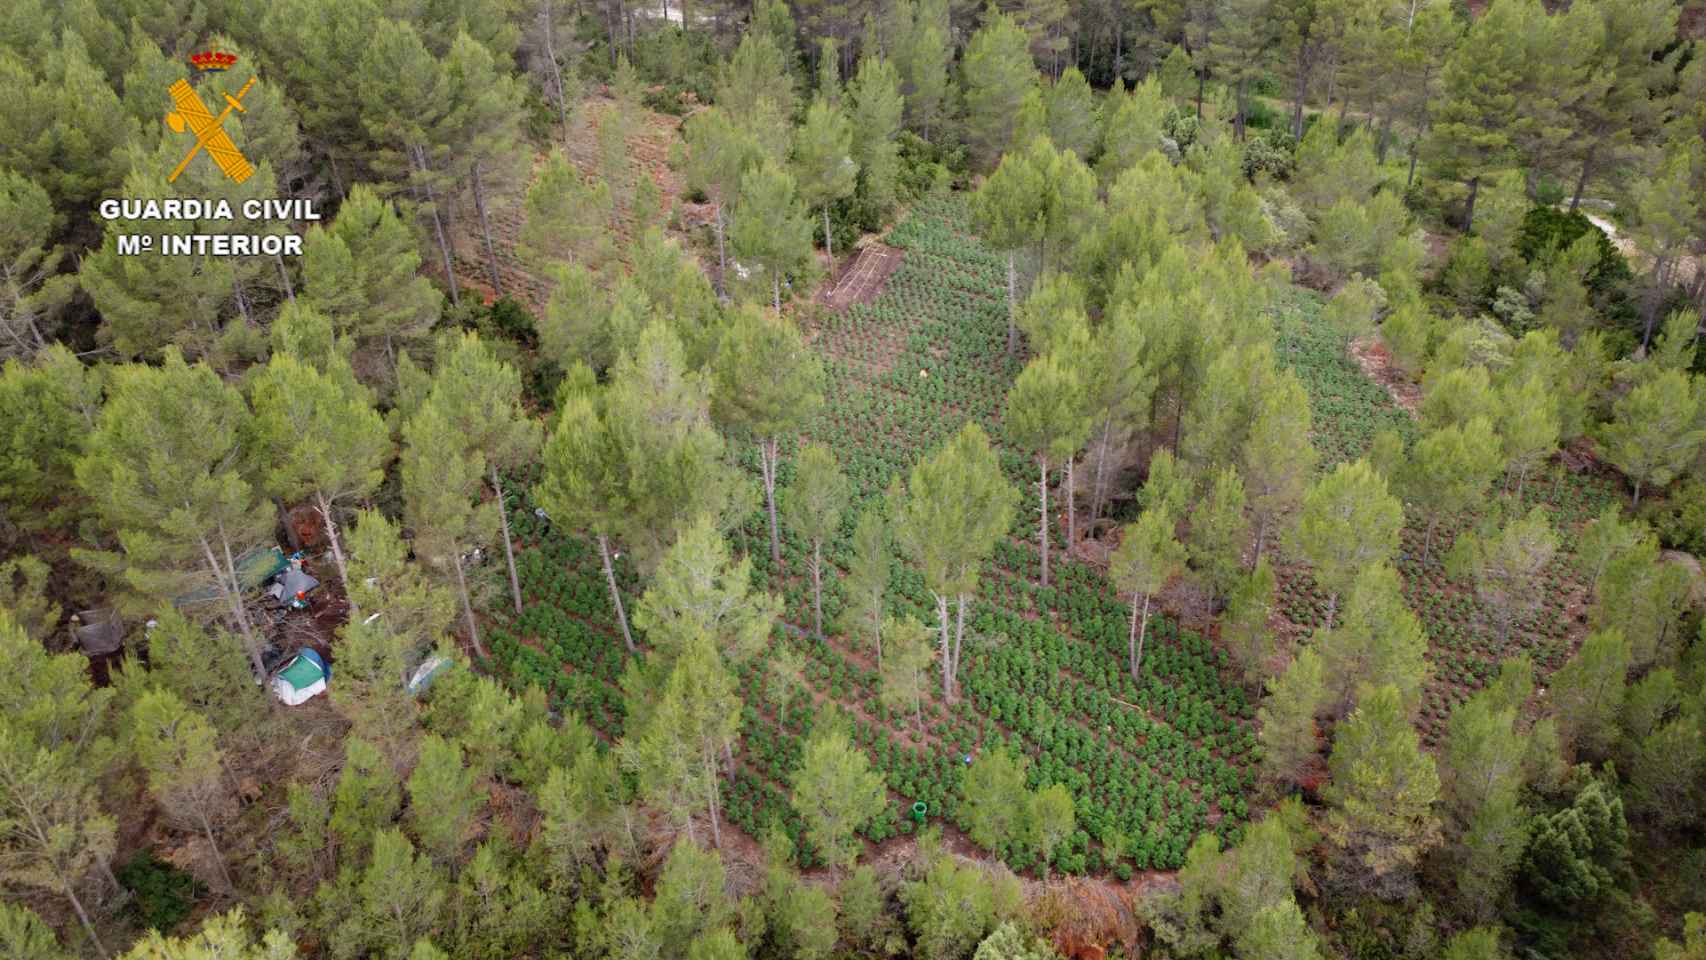 Un 'bosque' oculto de marihuana en Valencia: la Guardia Civil requisa 29.000 plantas en 2 pueblos.